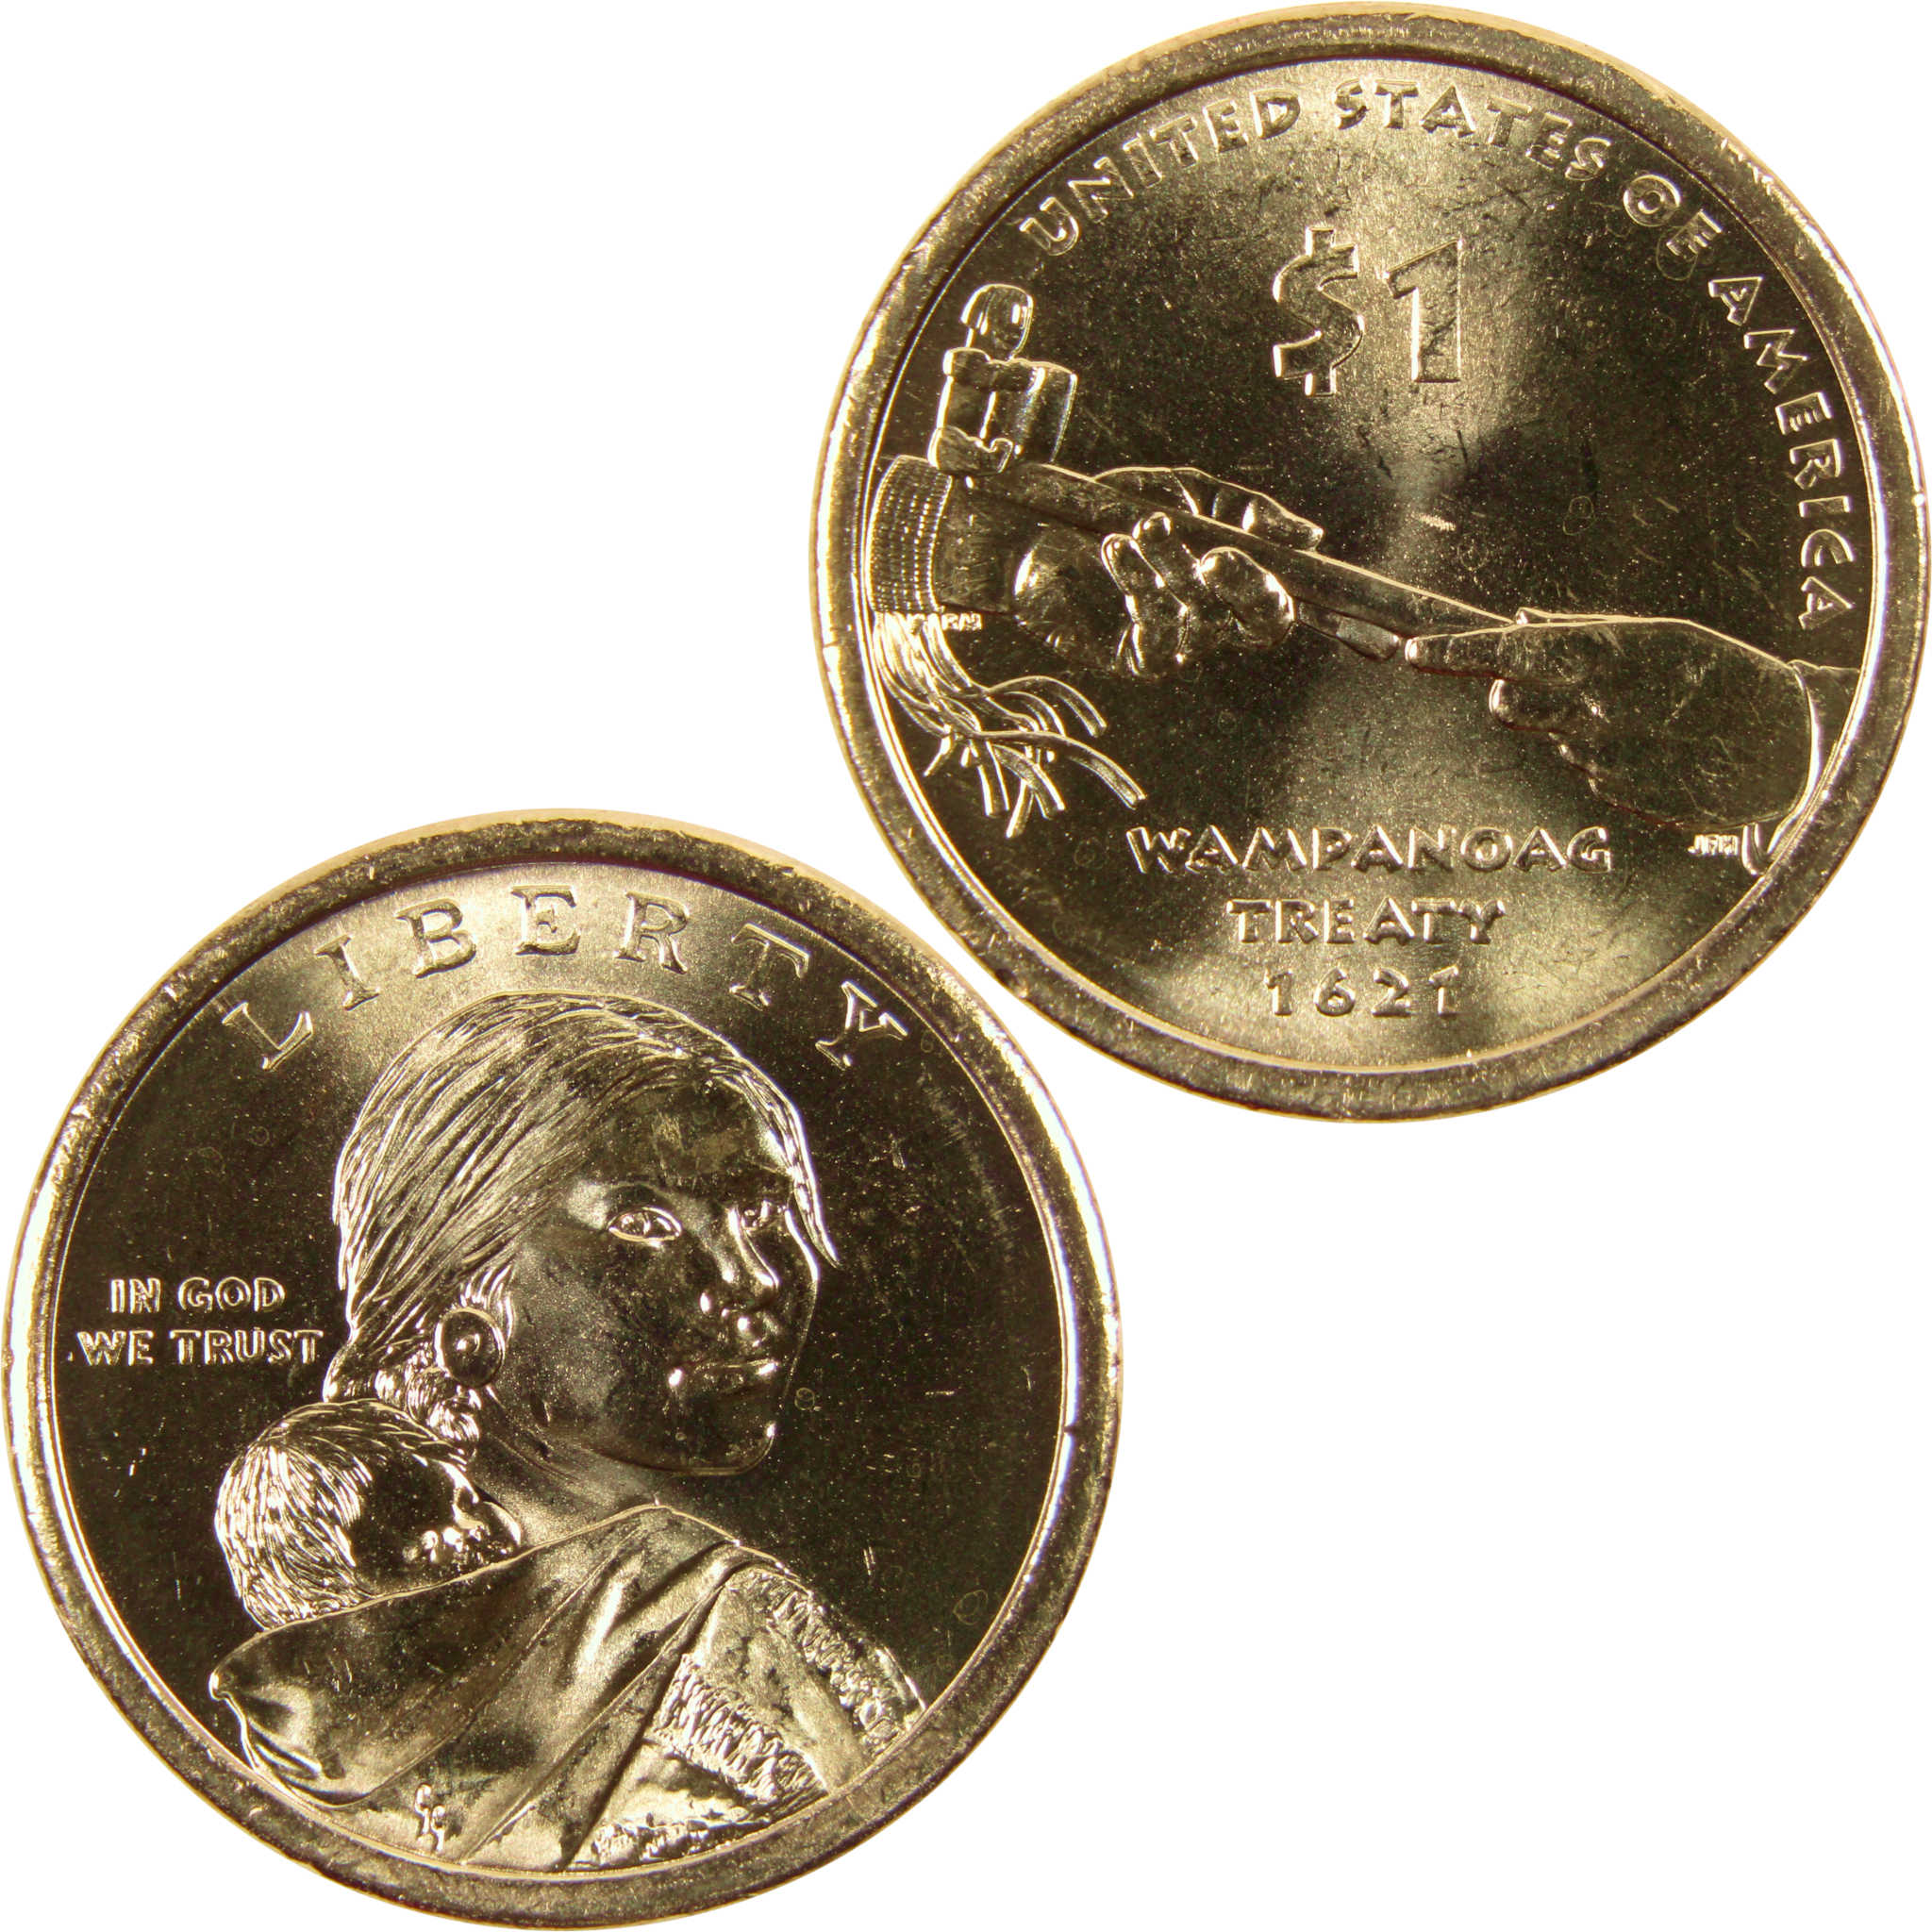 2011 P Wampanoag Treaty Native American Dollar BU Uncirculated $1 Coin